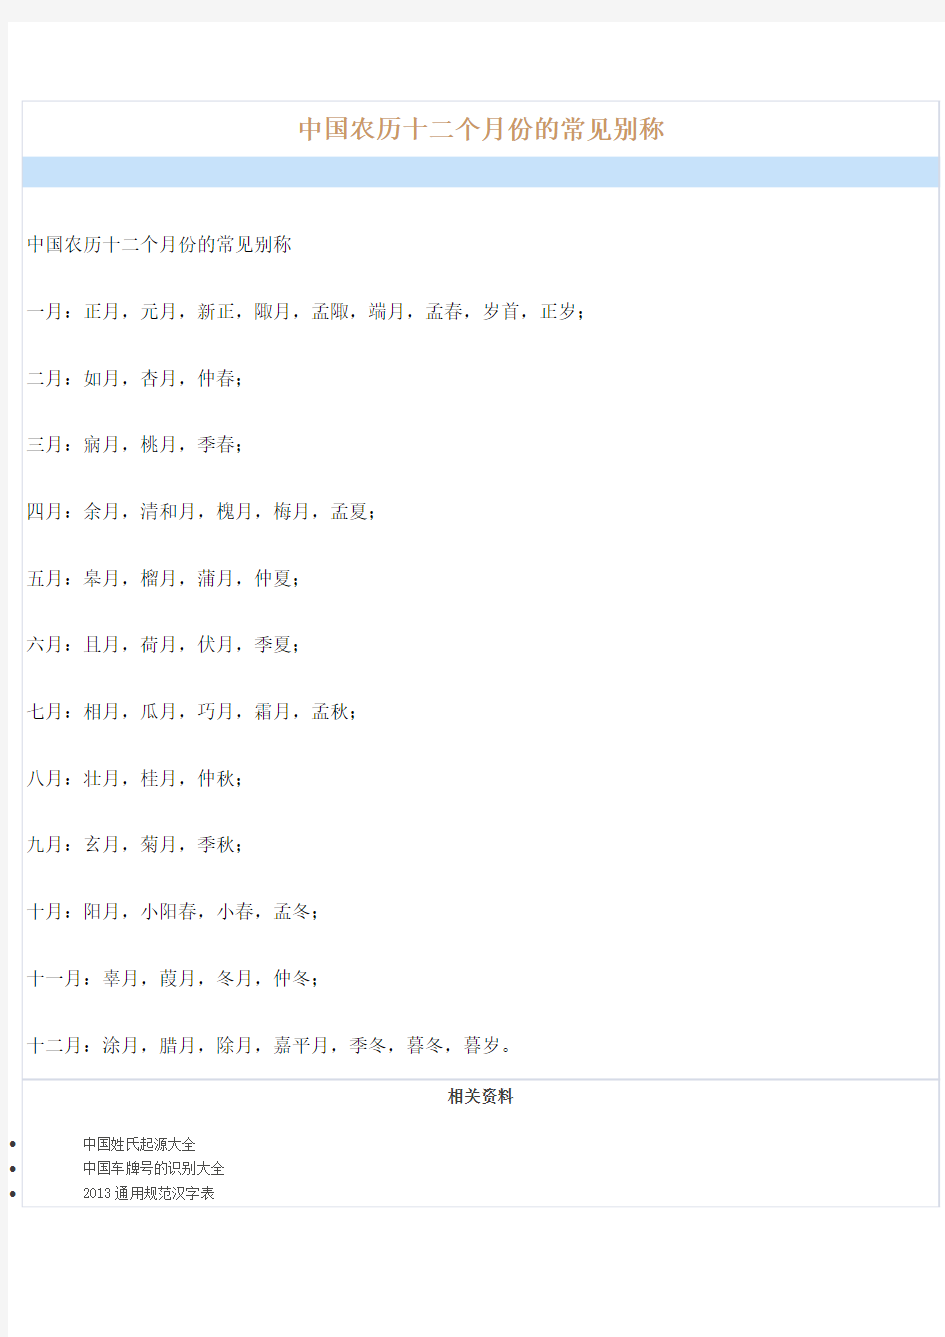 中国农历十二个月份的常见别称